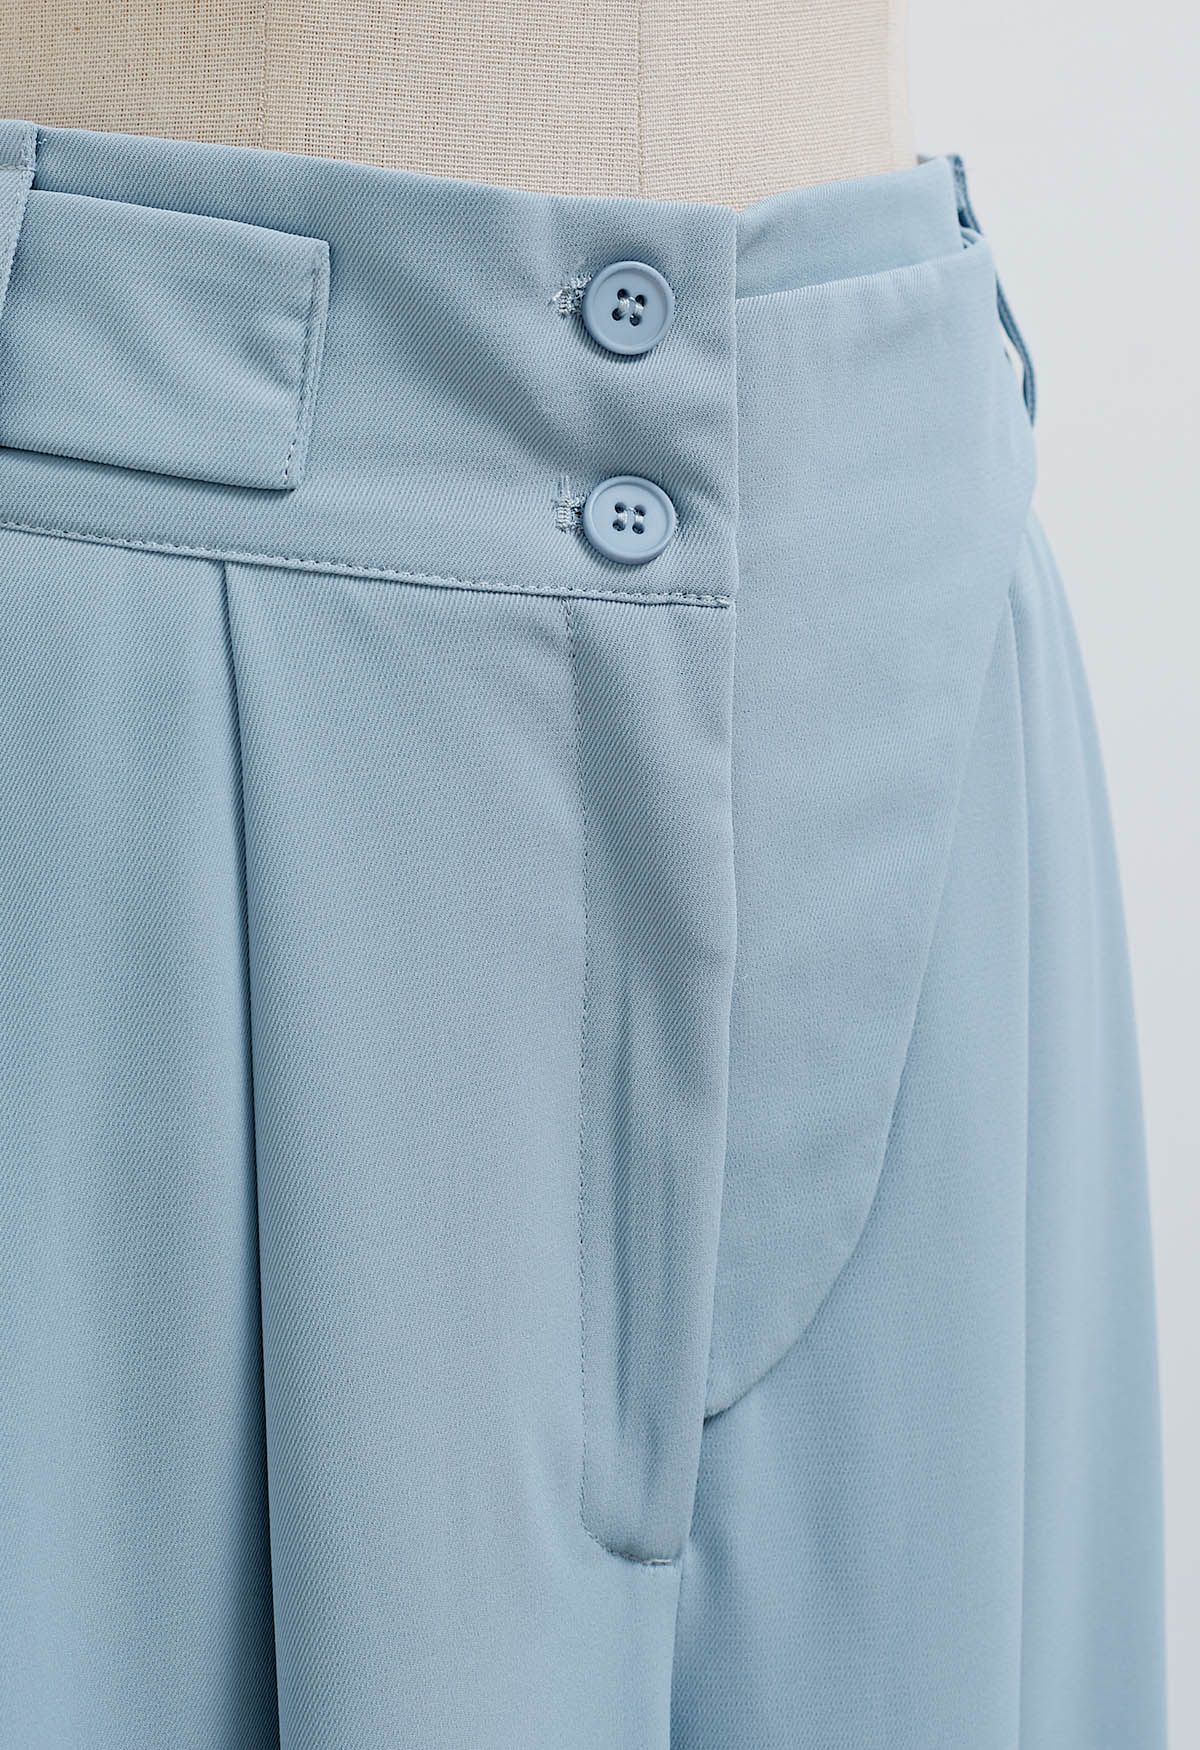 Pantalón ancho plisado con cinturón decorativo en azul